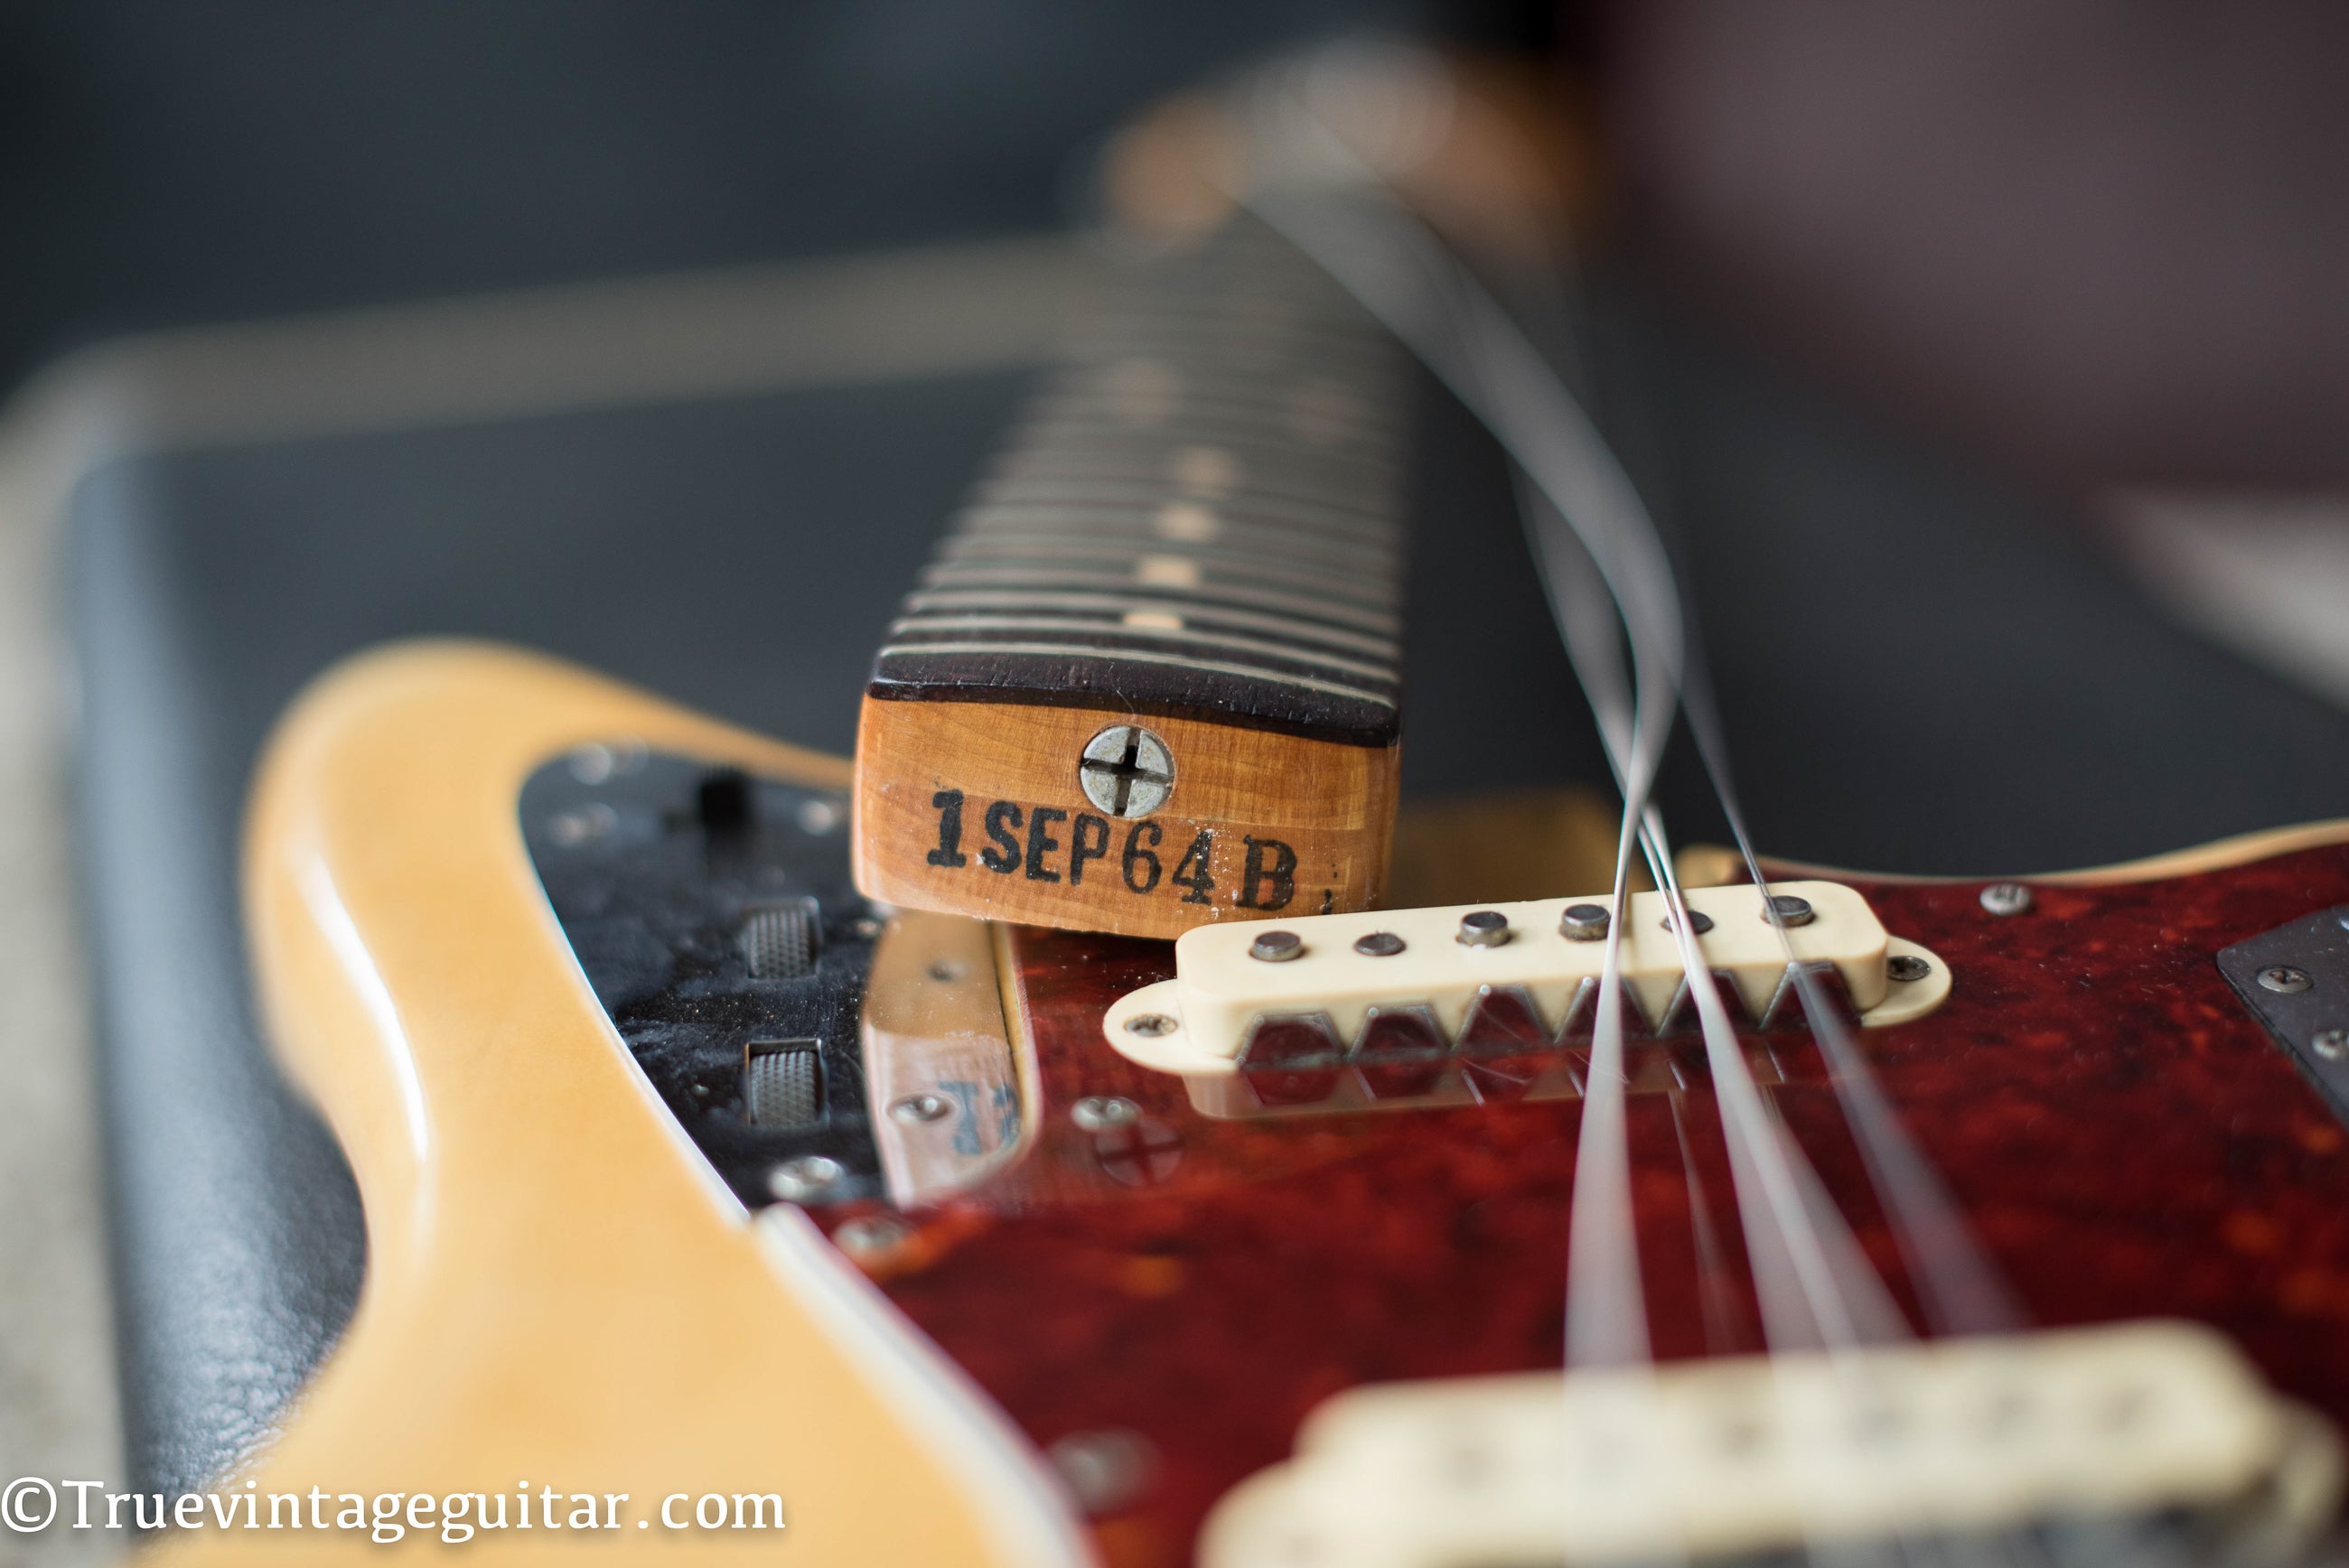 Neck heel stamp, 1SEP64B, Vintage 1964 Fender Jaguar electric guitar Blond finish Ash body